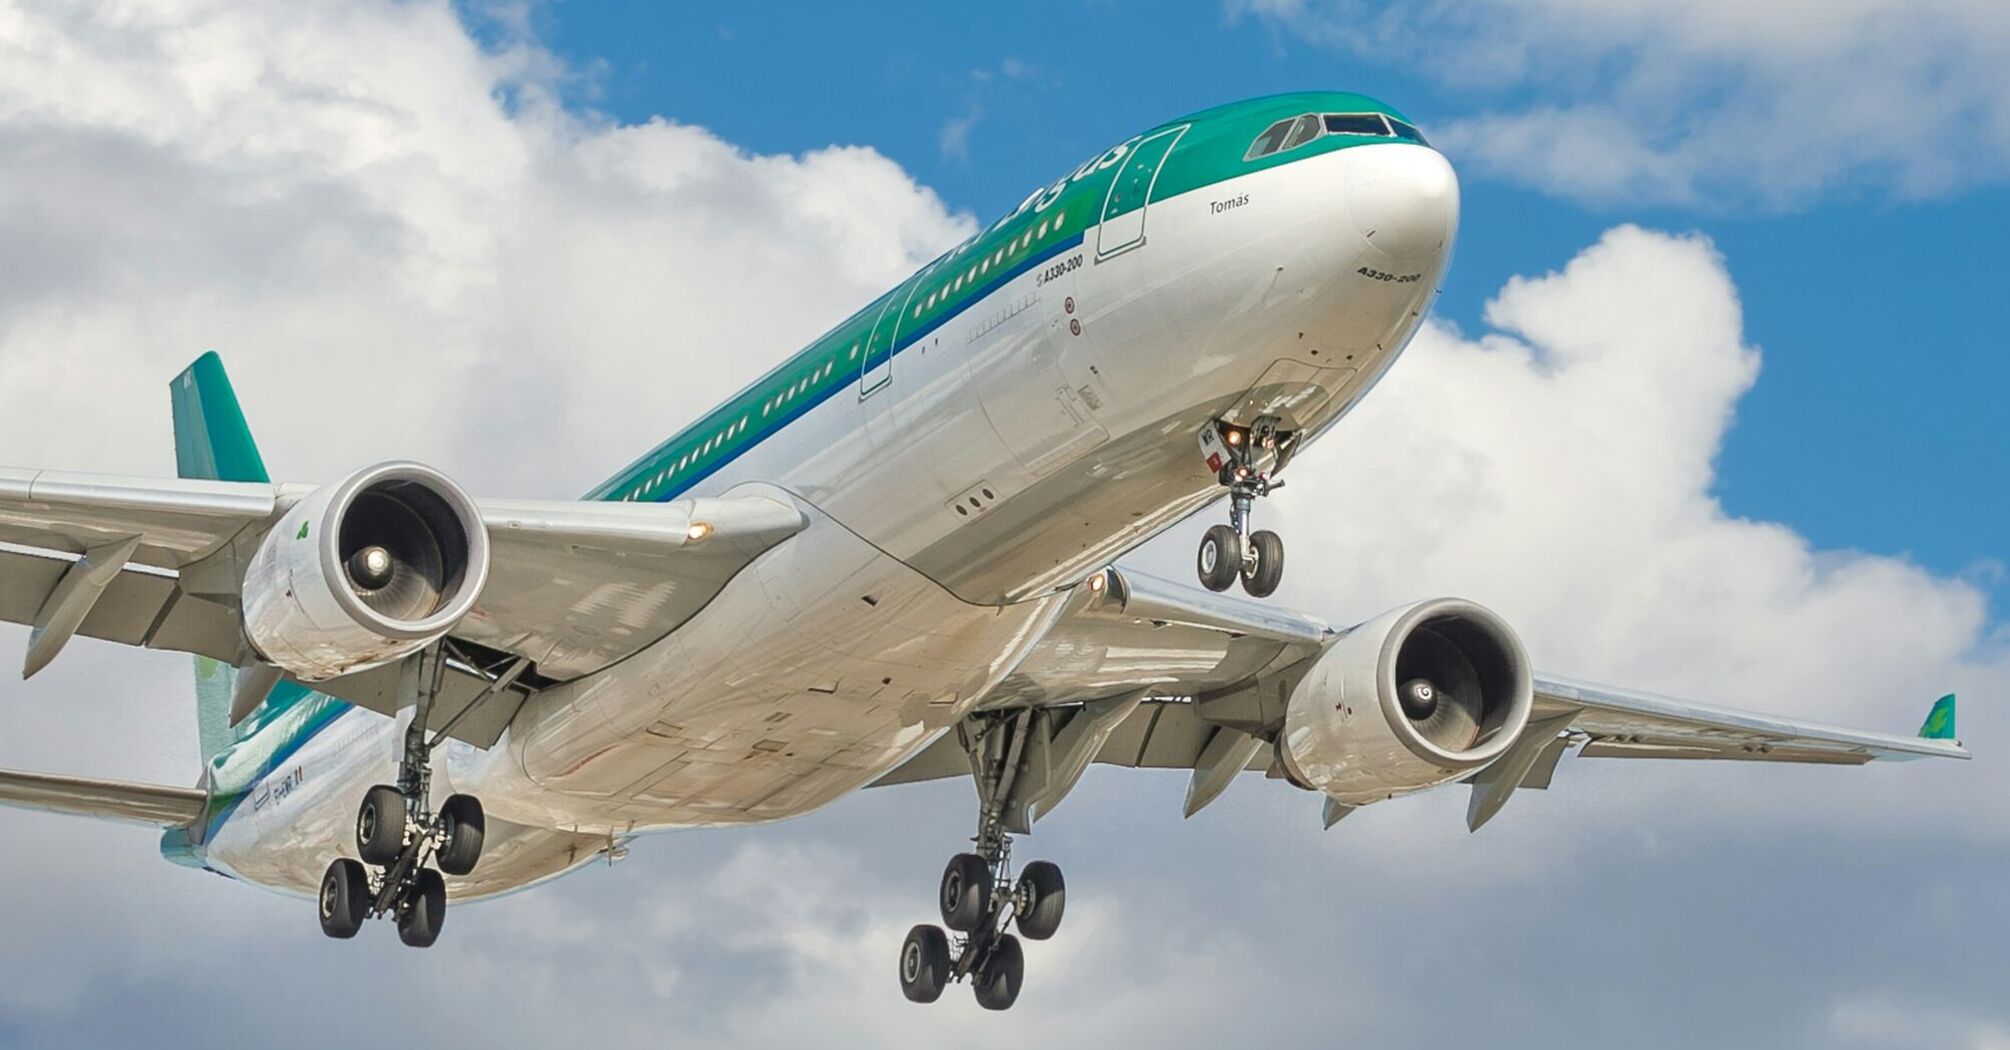 Aer Lingus airplane in flight